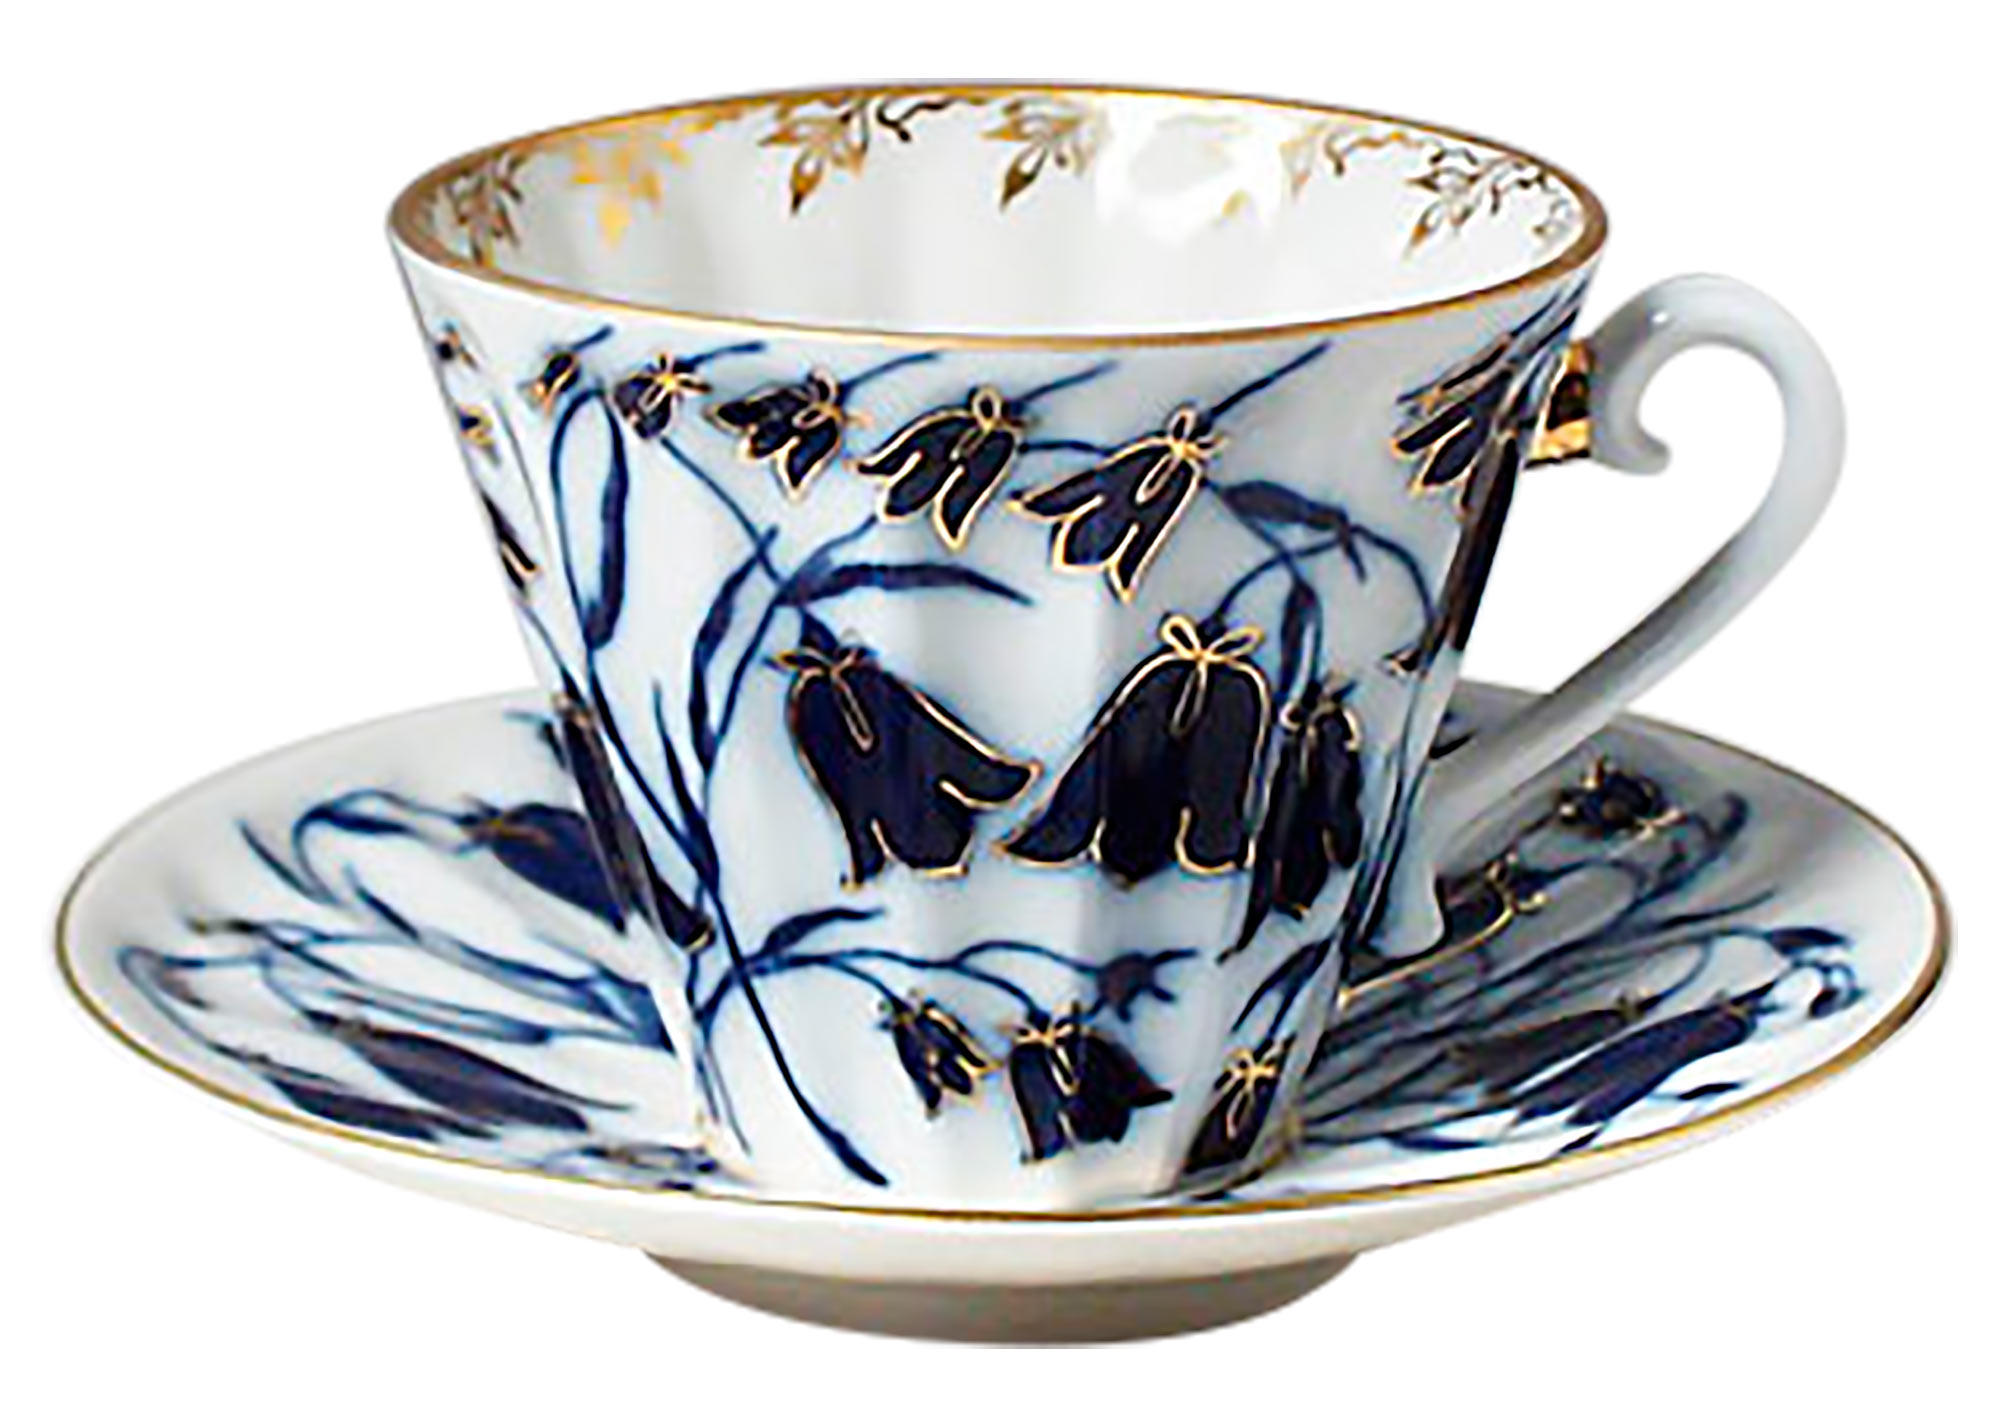 Buy Blue Bells Porcelain Cup & Saucer at GoldenCockerel.com